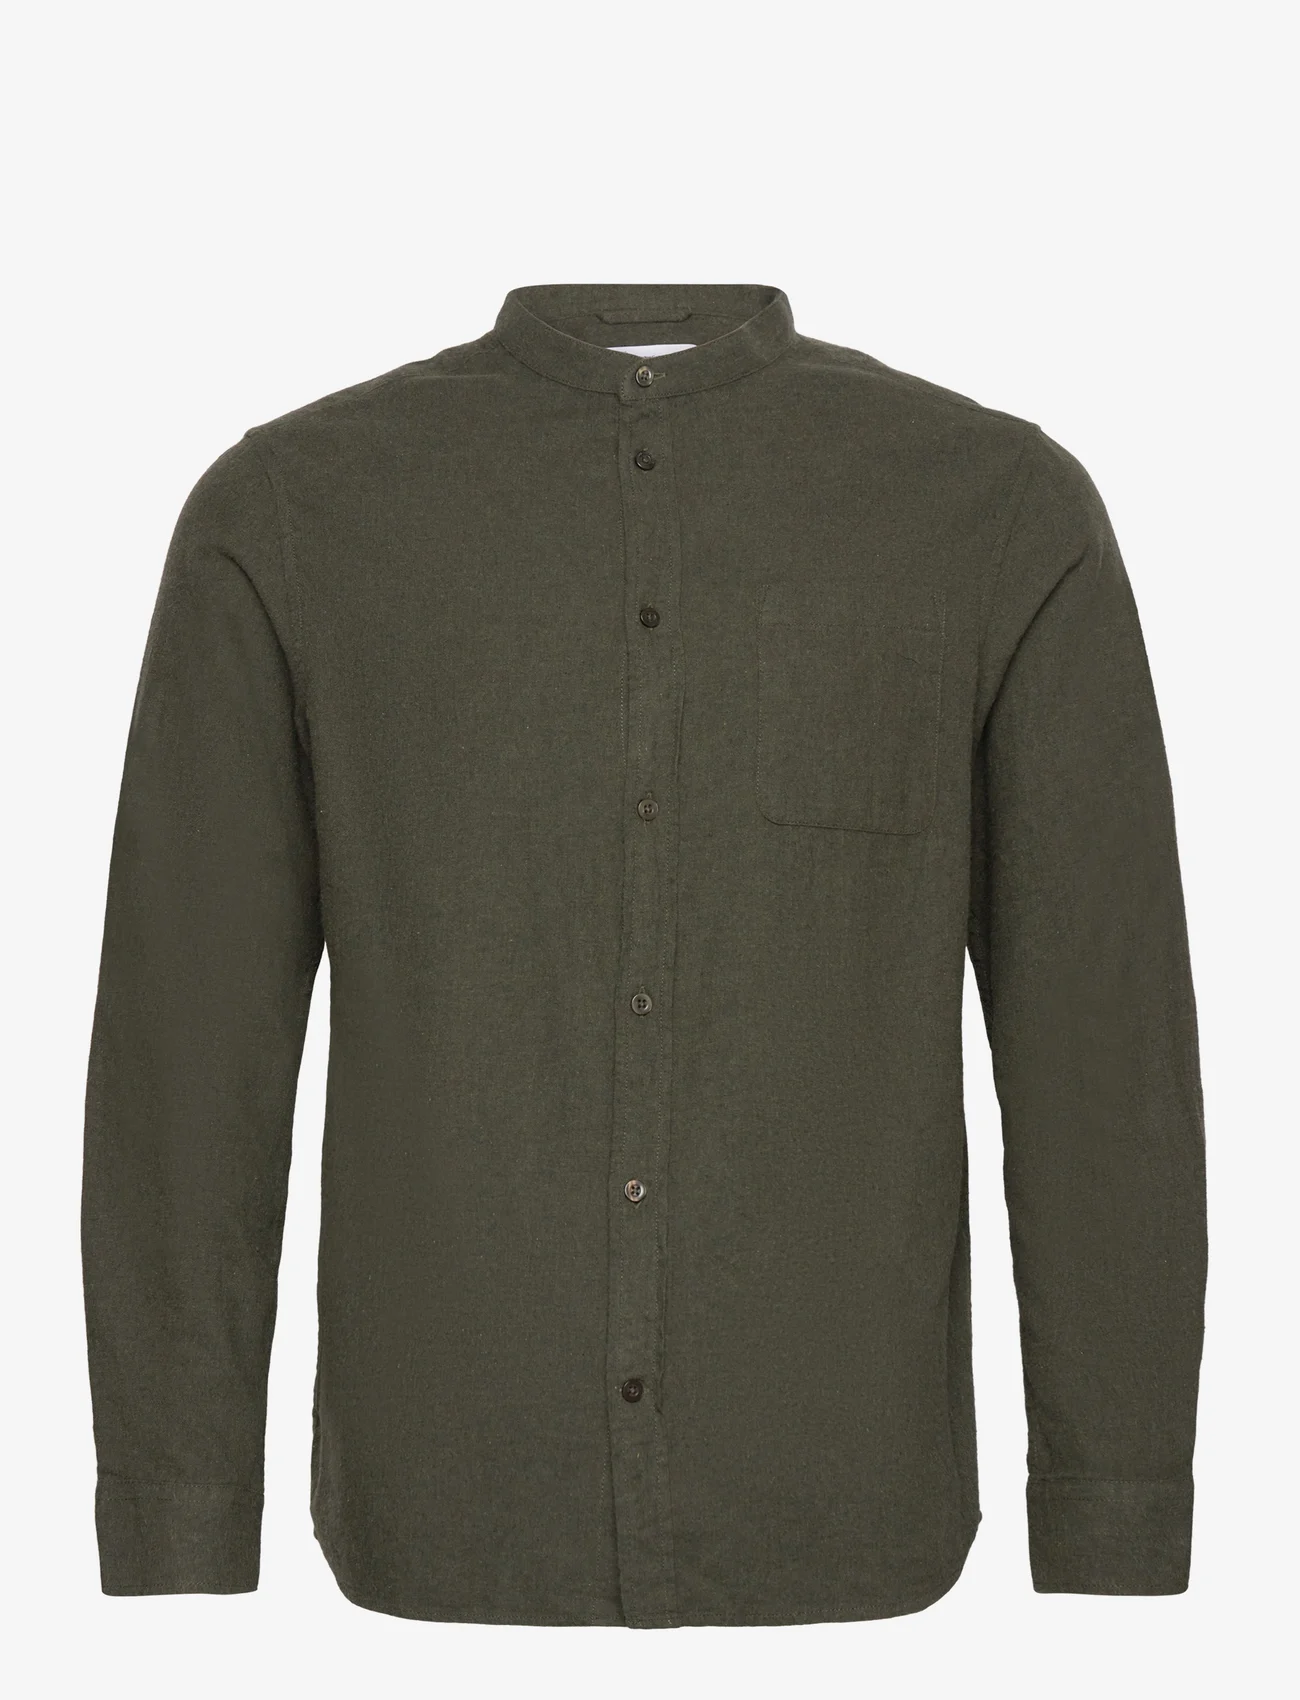 Knowledge Cotton Apparel - Regular fit melangé flannel stand c - basic skjorter - forrest night - 0